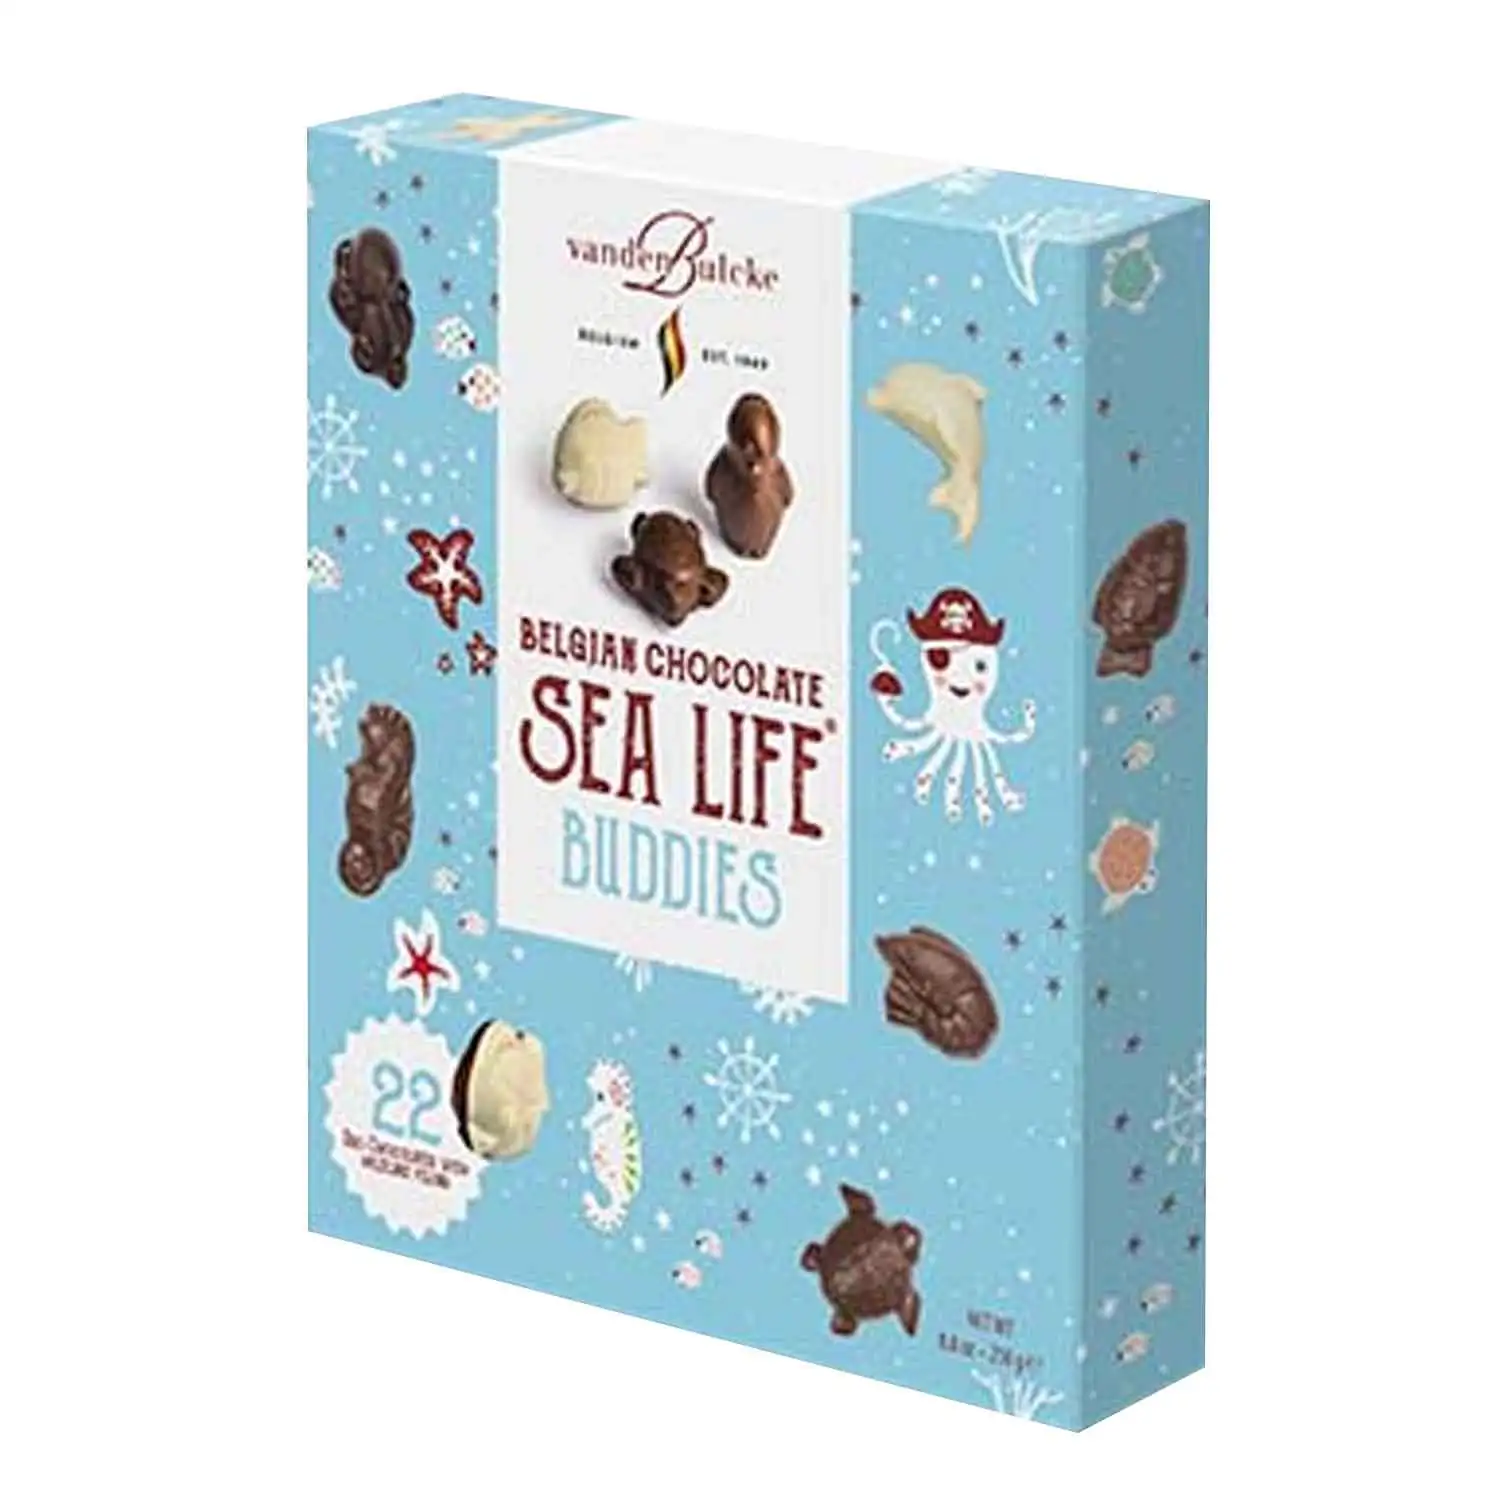 Sea Life buddies 245g - Buy at Real Tobacco